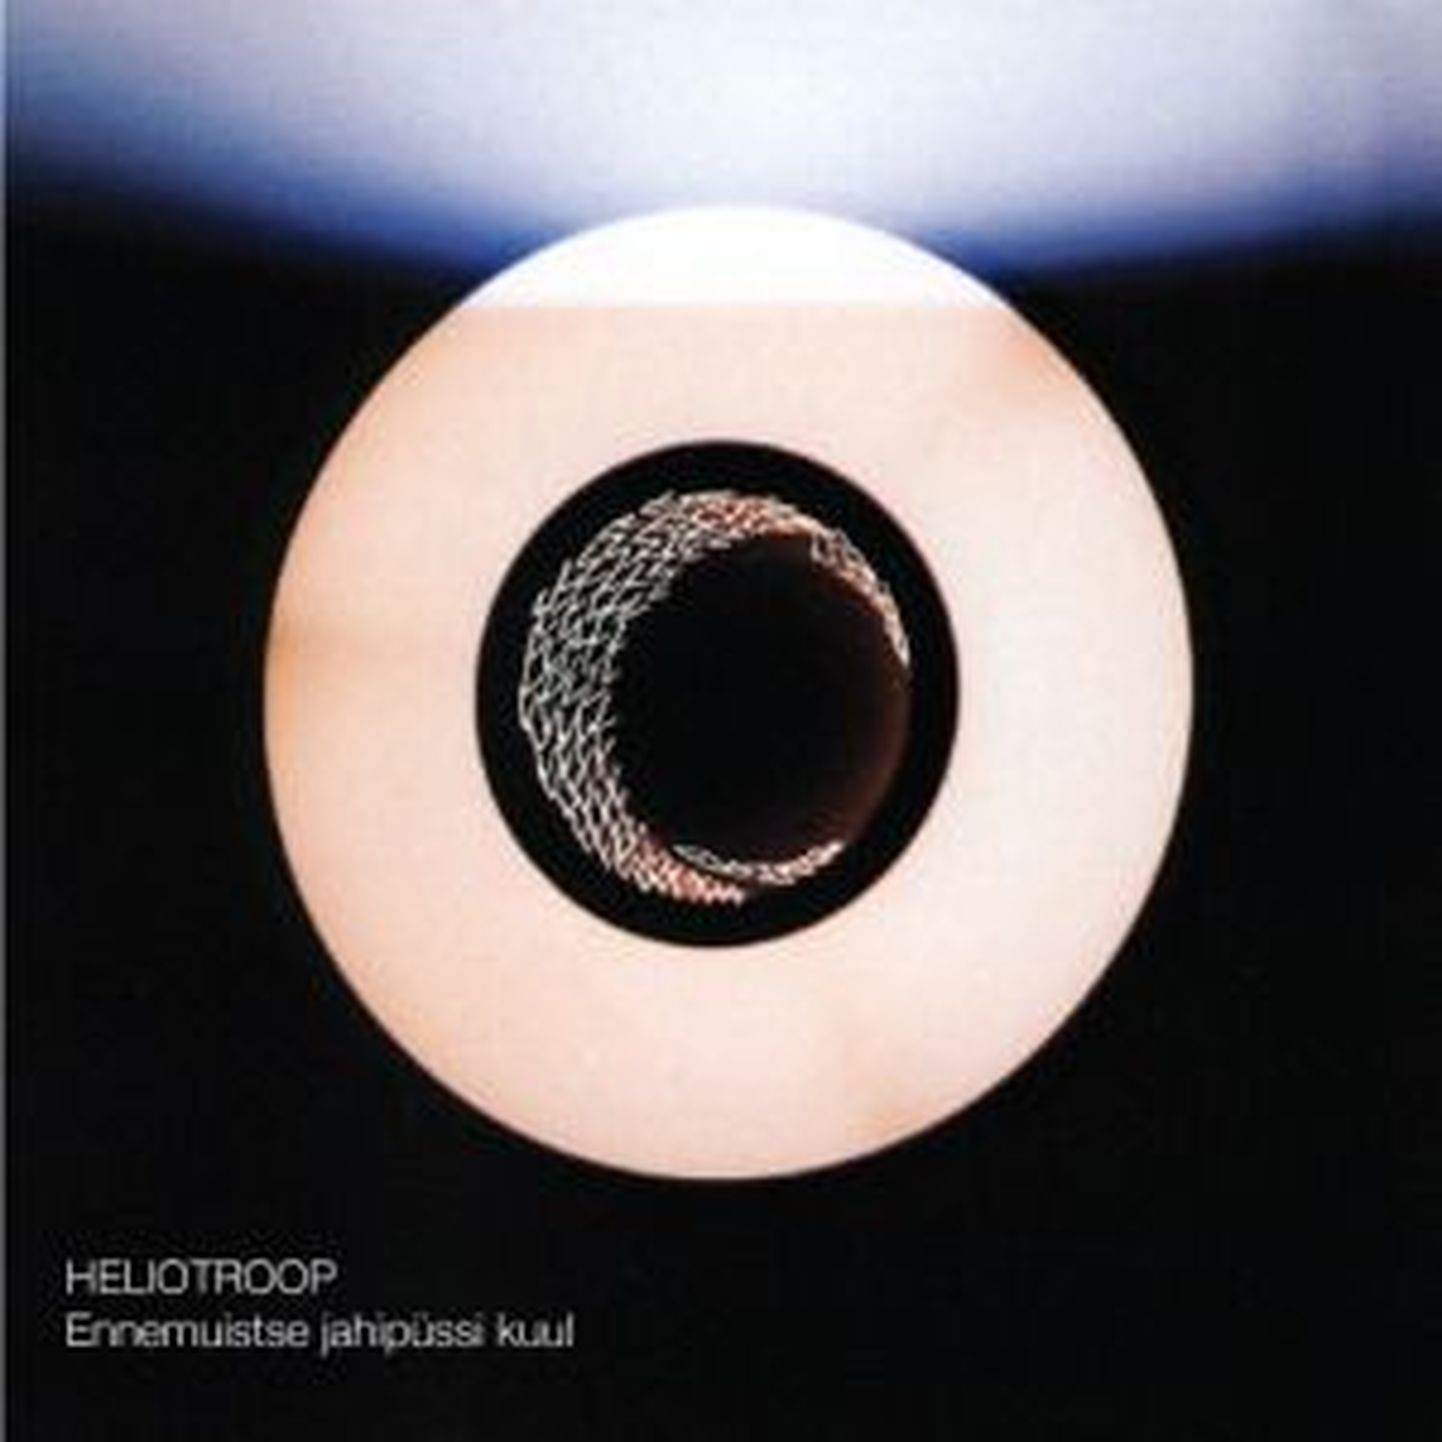 Heliotroop-Ennemuistse jahipüssi kuul